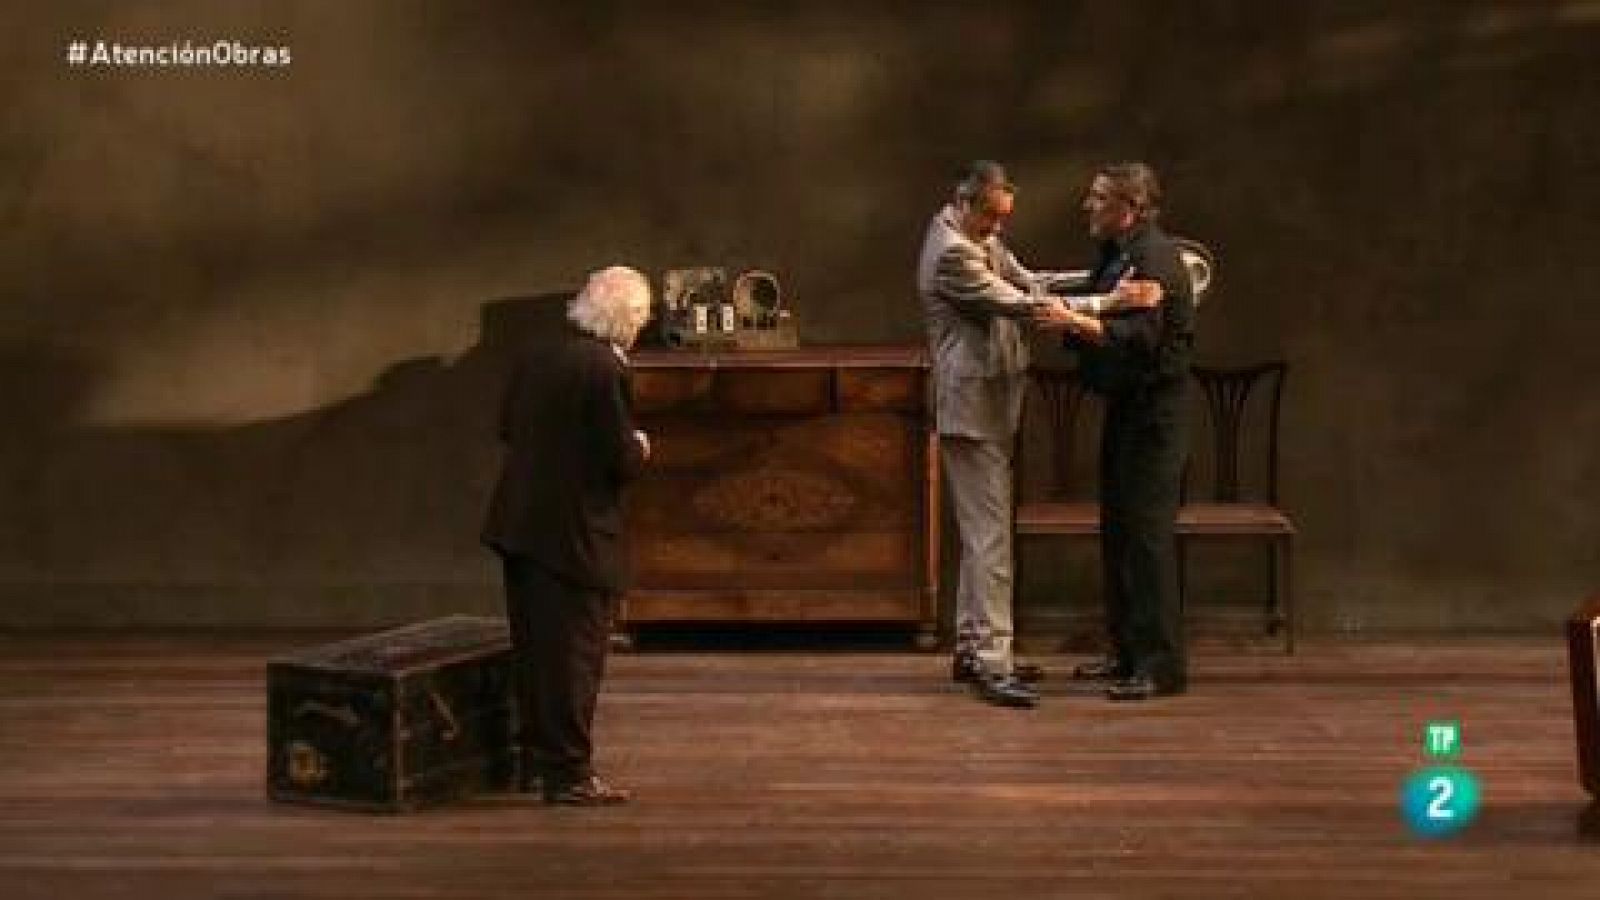 Atención obras:  Silvia Munt dirige "El precio" de Arthur Miller | RTVE Play